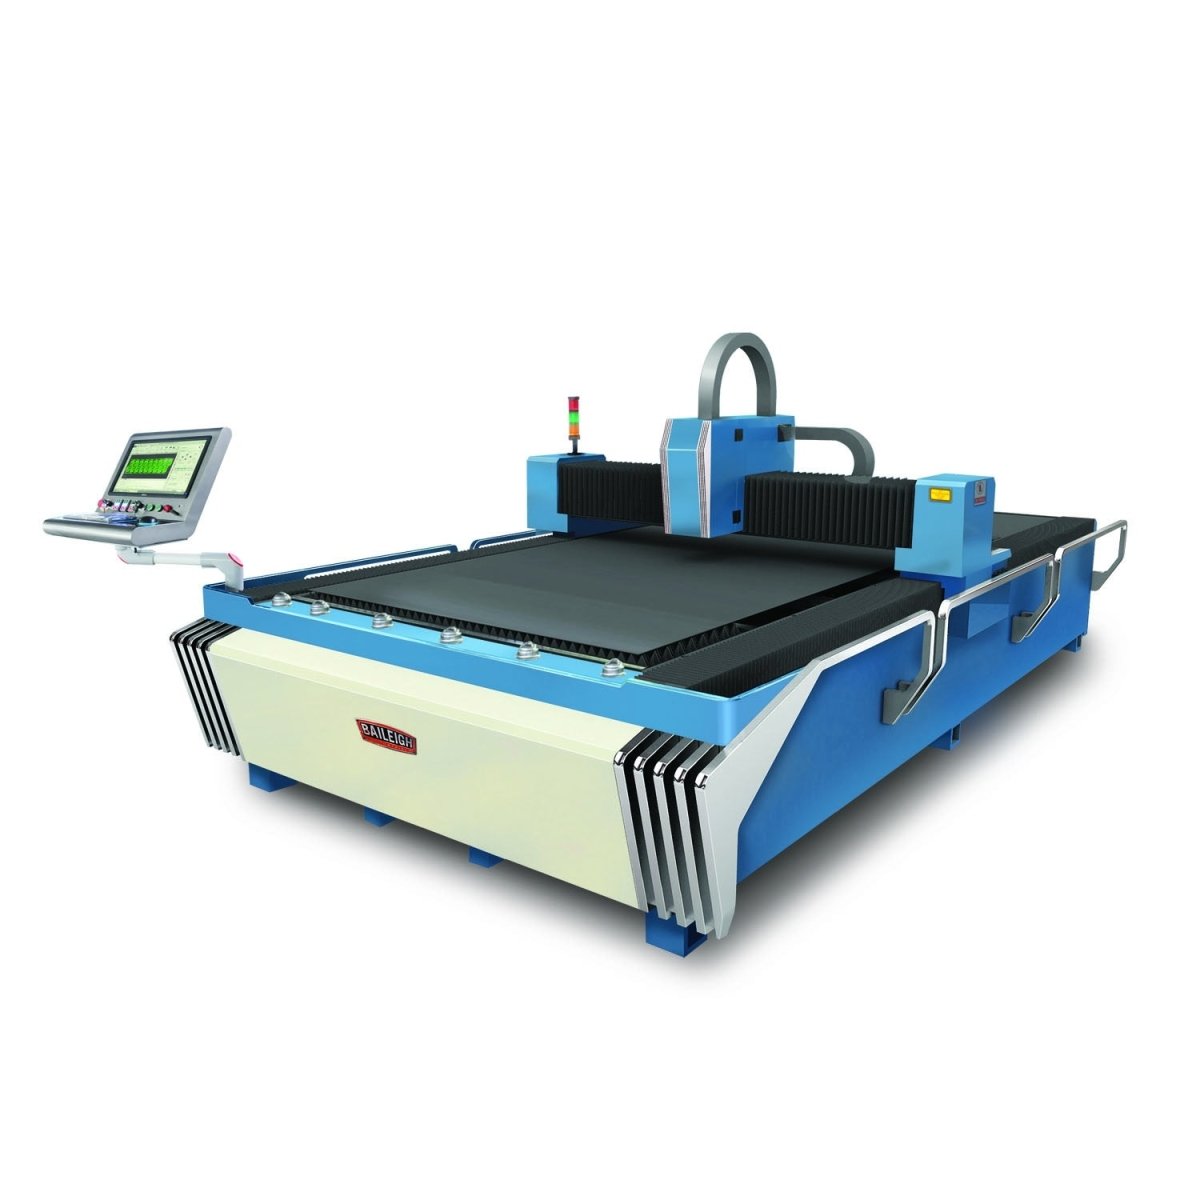 CNC Laser Table - FL-510HD-1000 - Baileigh